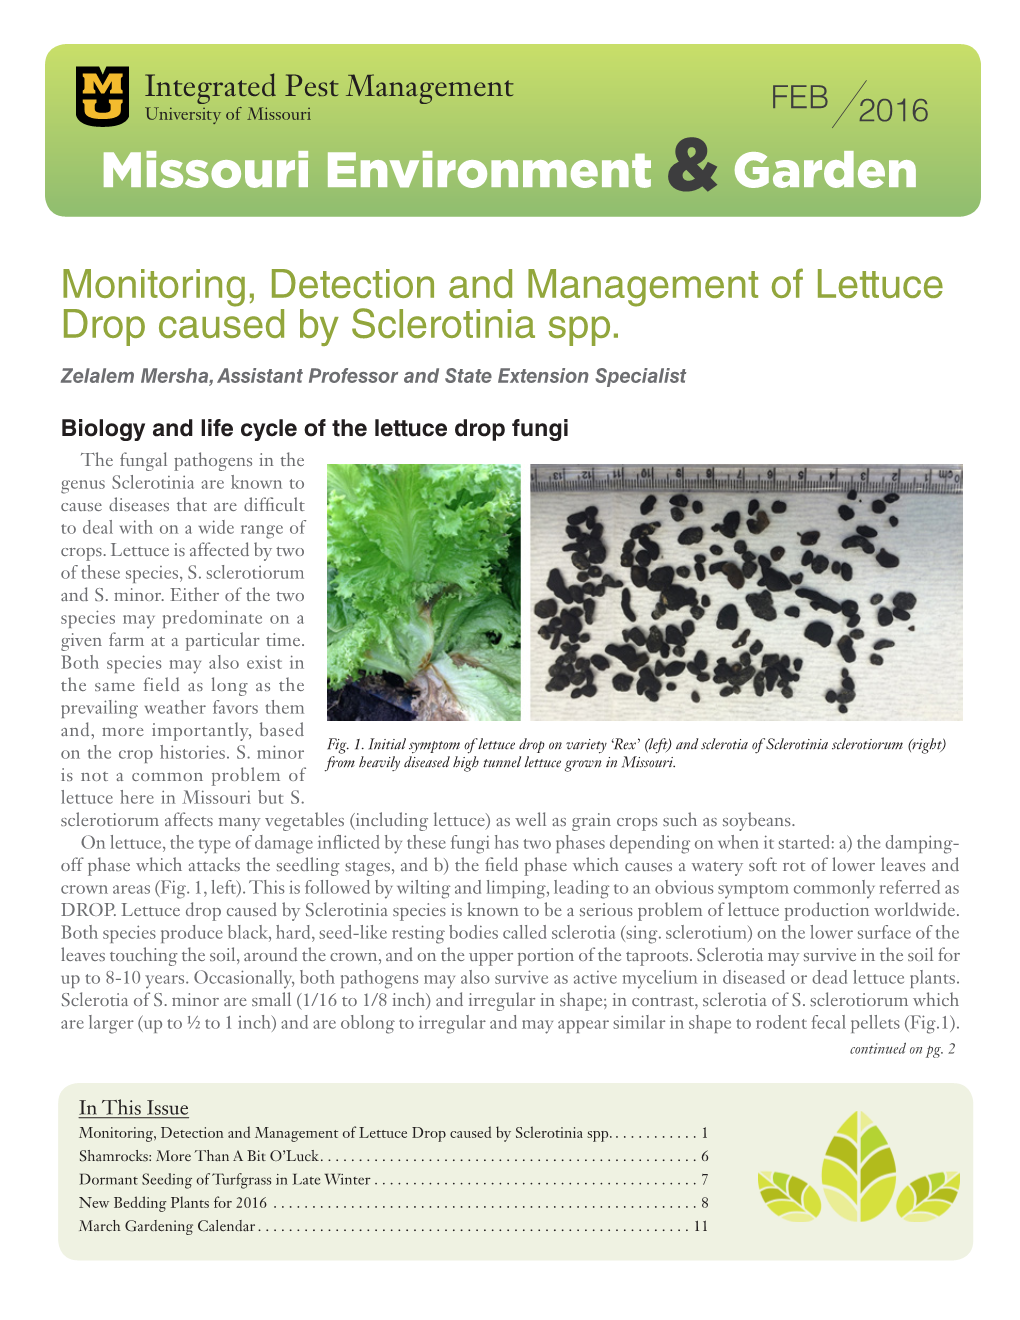 Missouri Environment and Garden Newsletter, February 2016